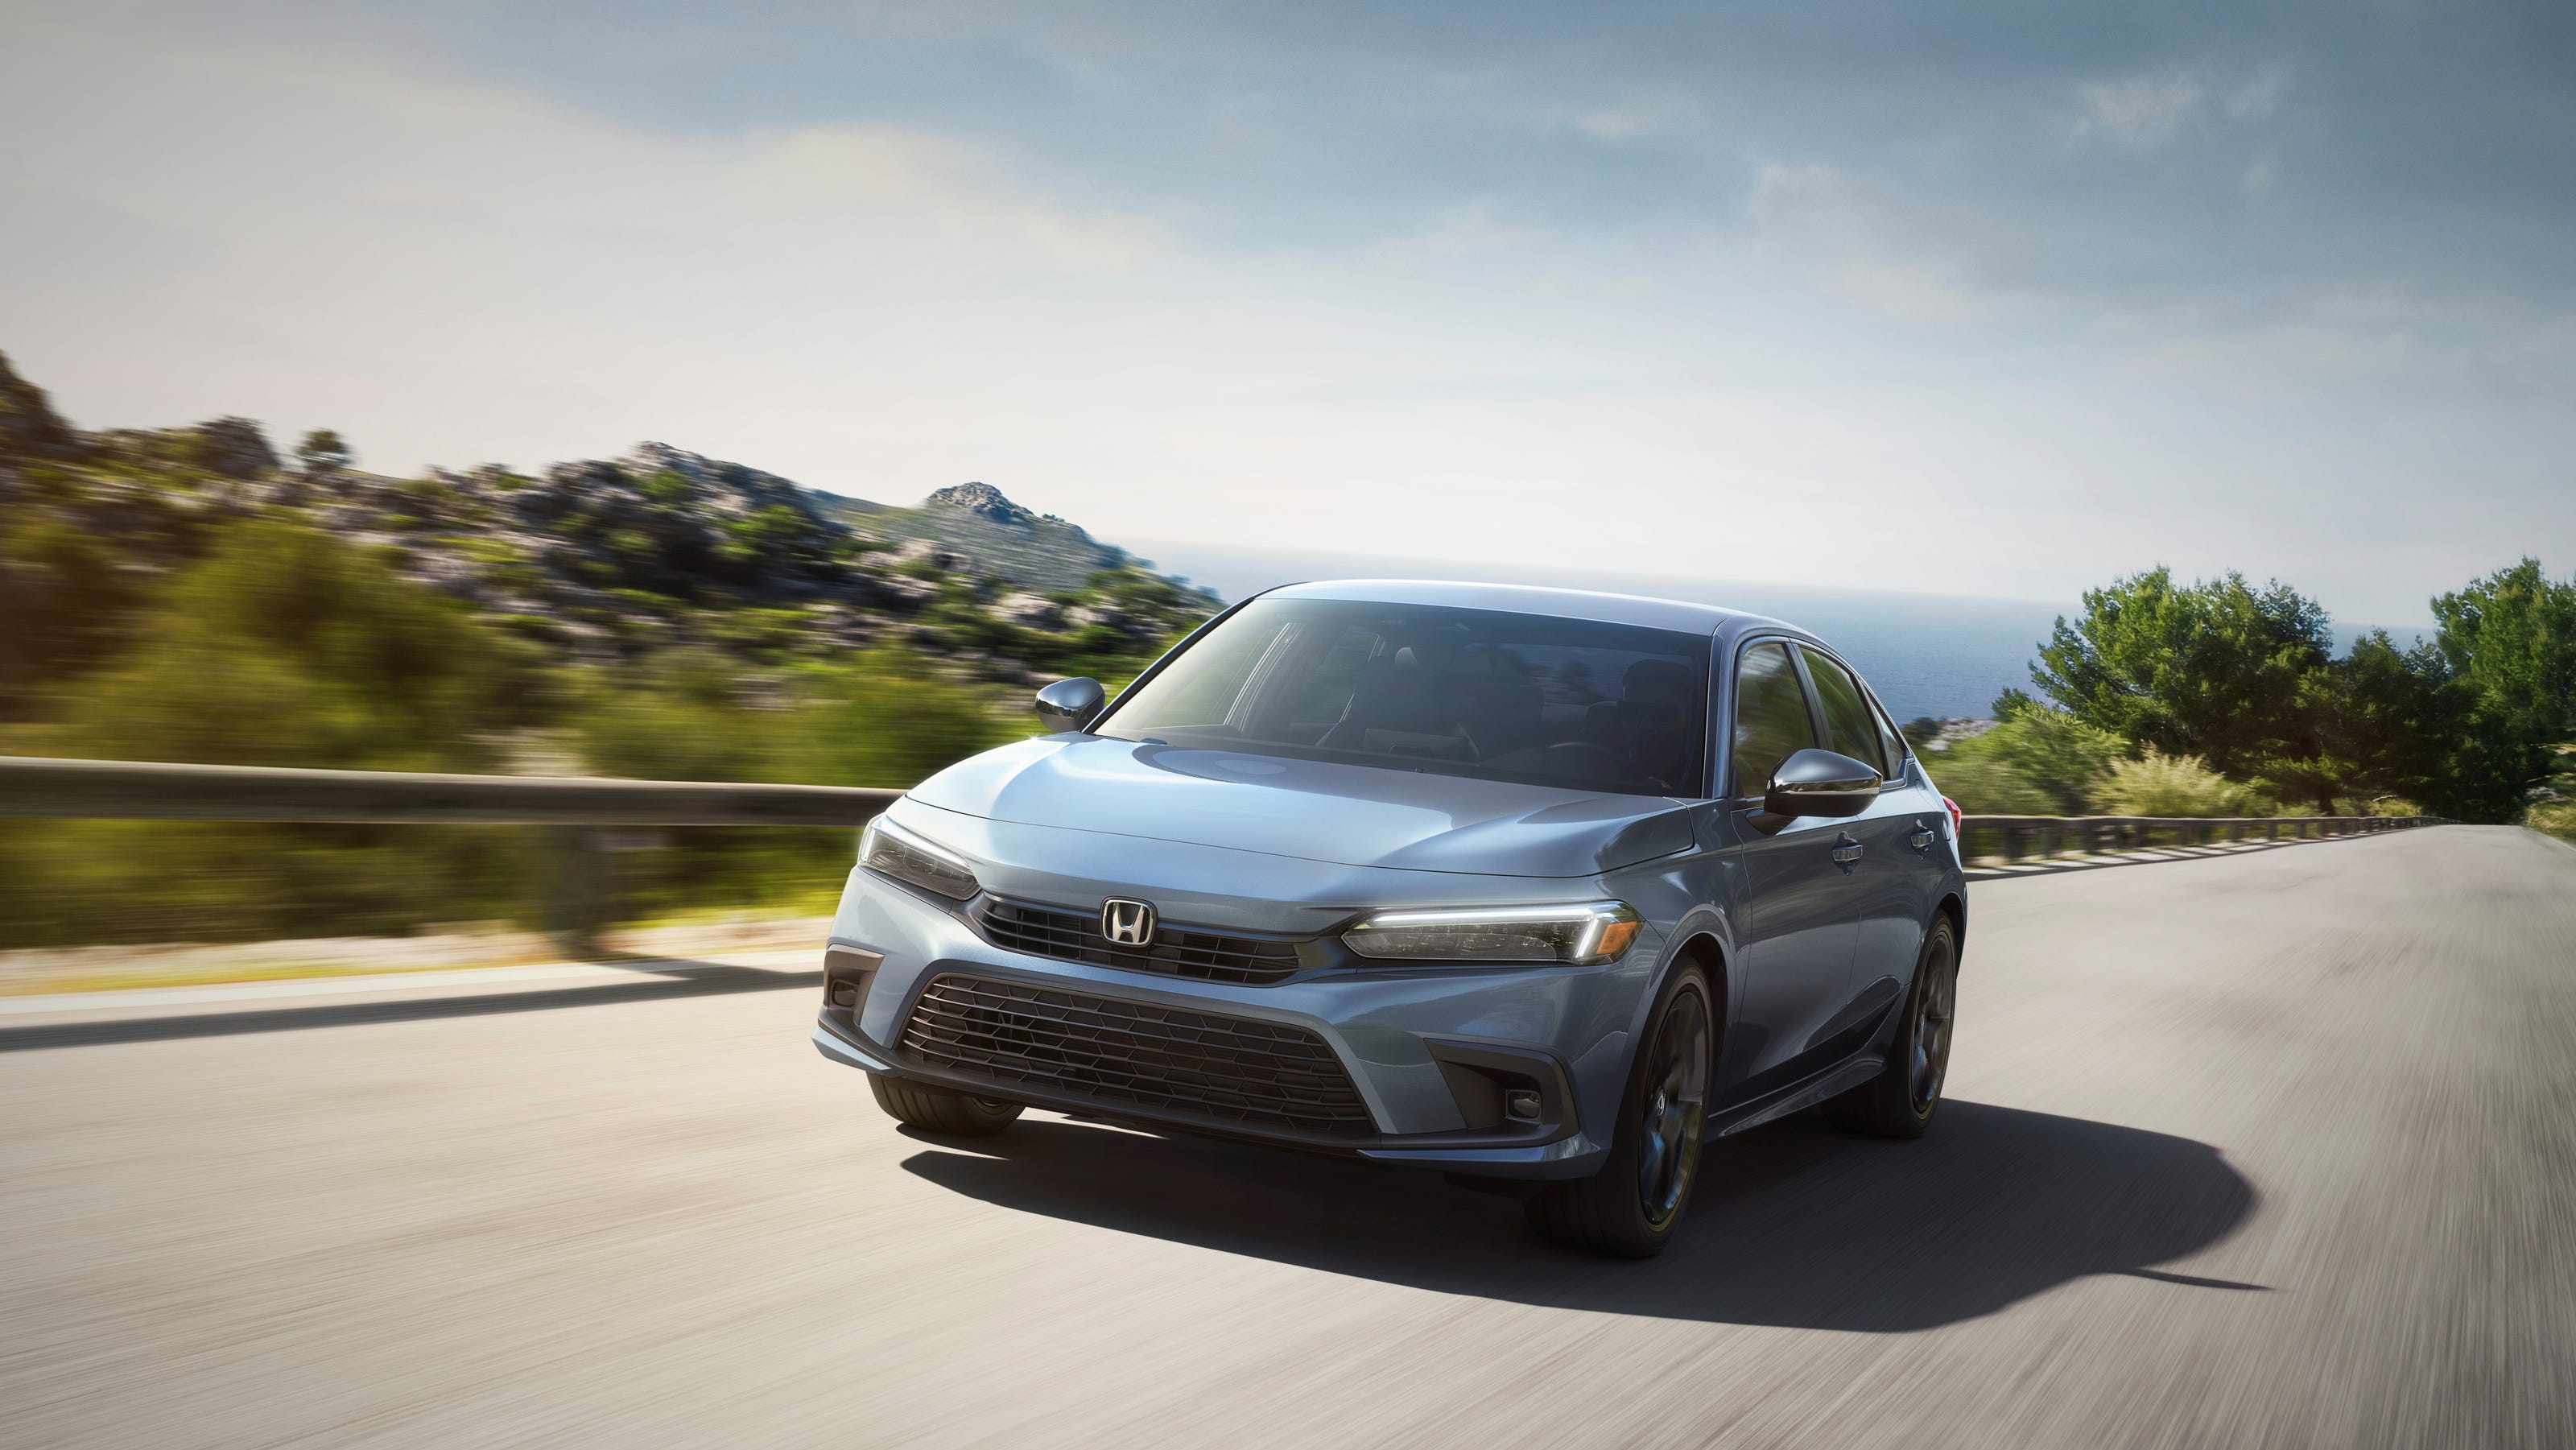 Honda Civic 22 Redesigned Honda Reveals New Compact Car